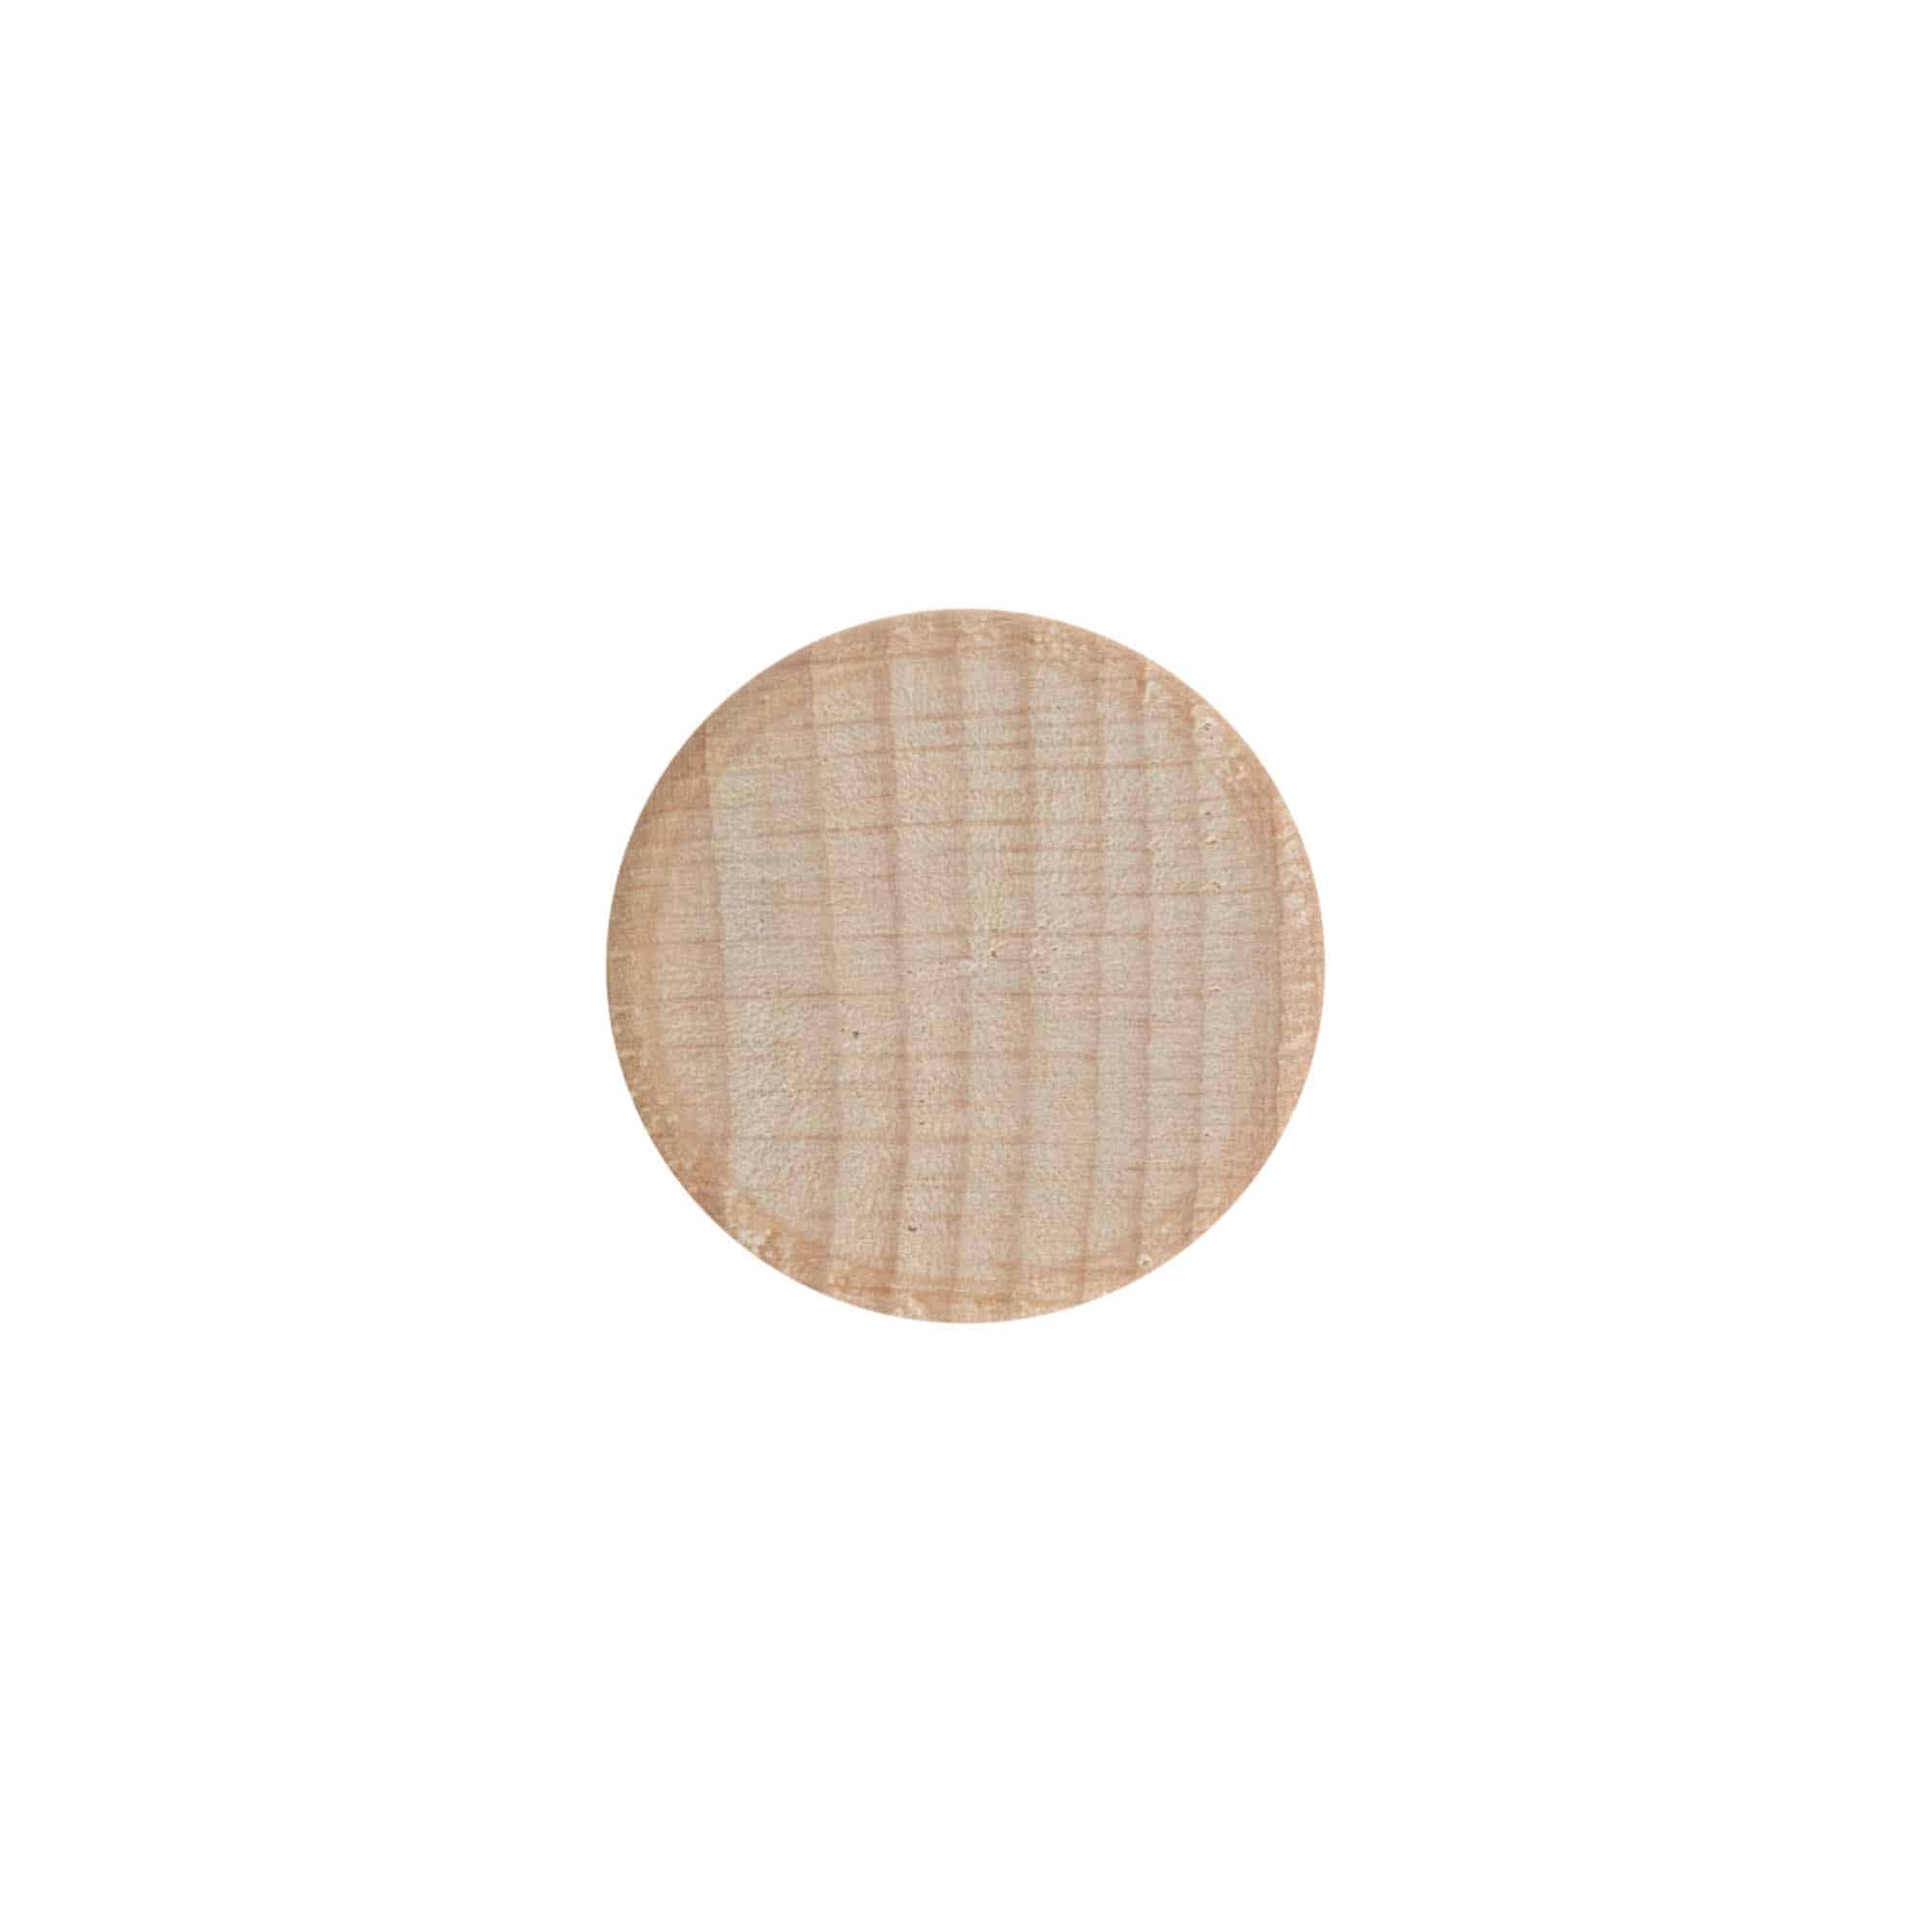 Zakrętka, drewno, kolor beżowy, do zamknięcia: GPI 28/400